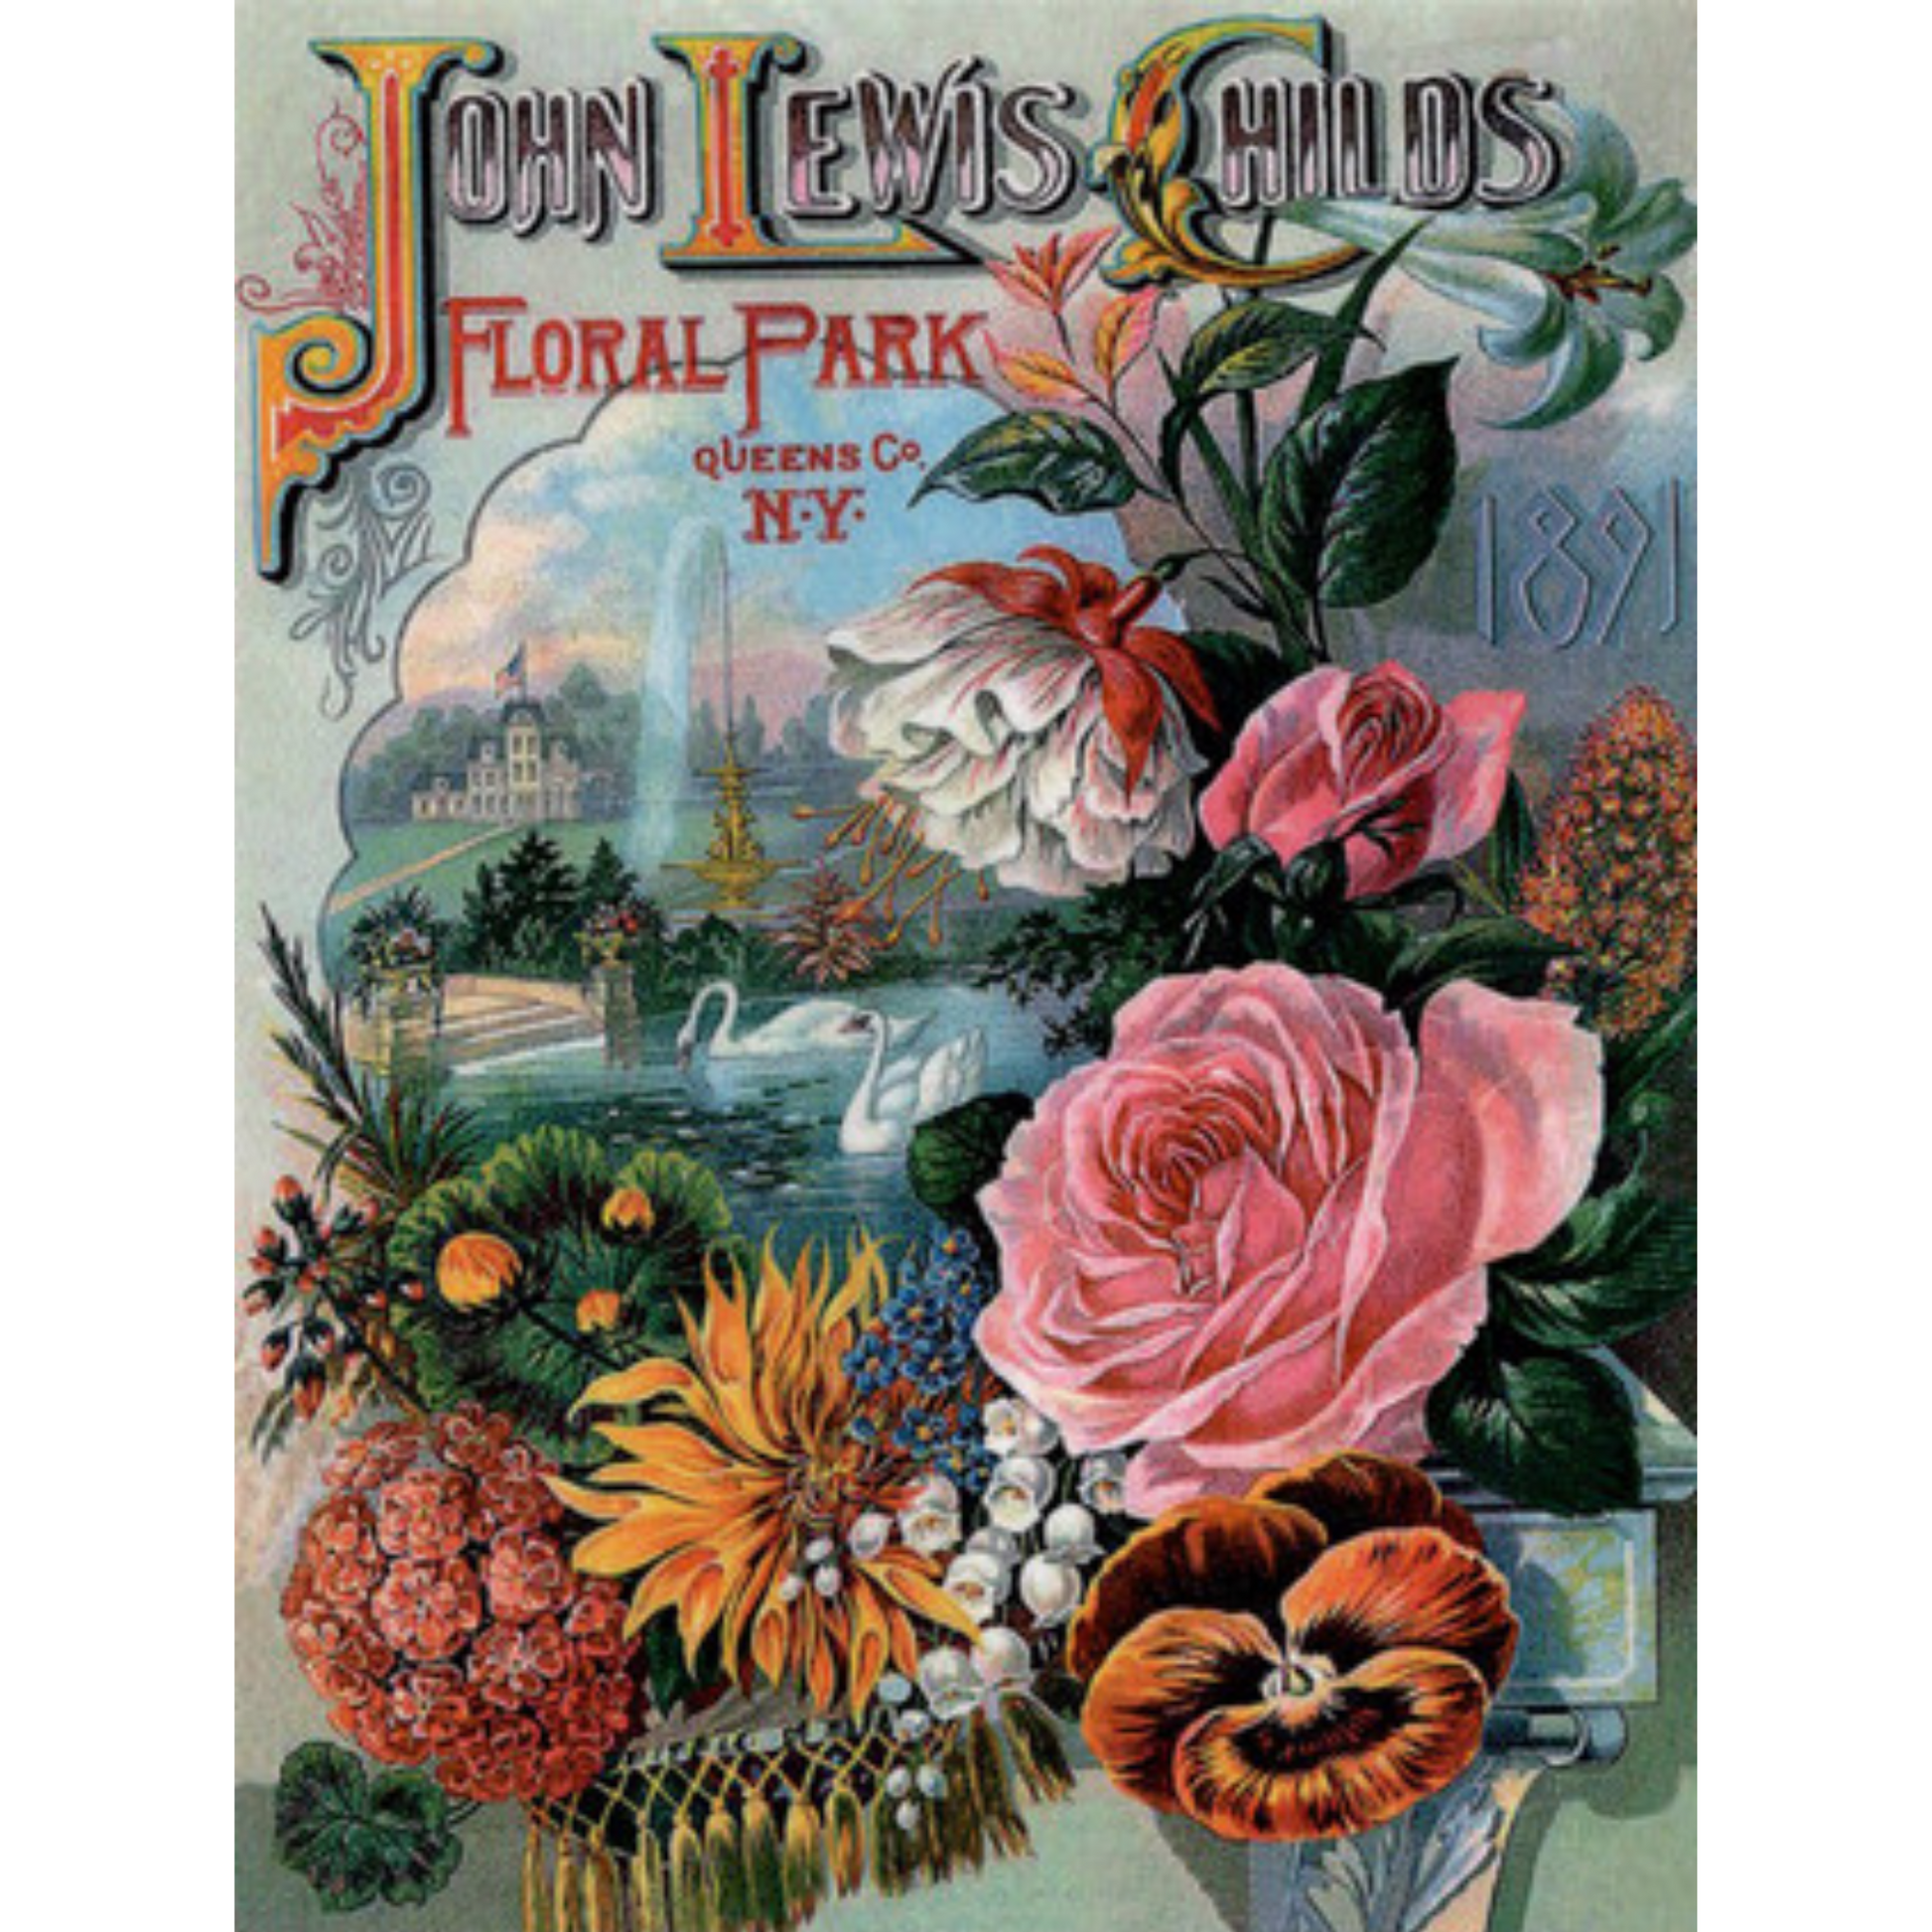 John Lewis Childs 1891 Floral Park Catalogue